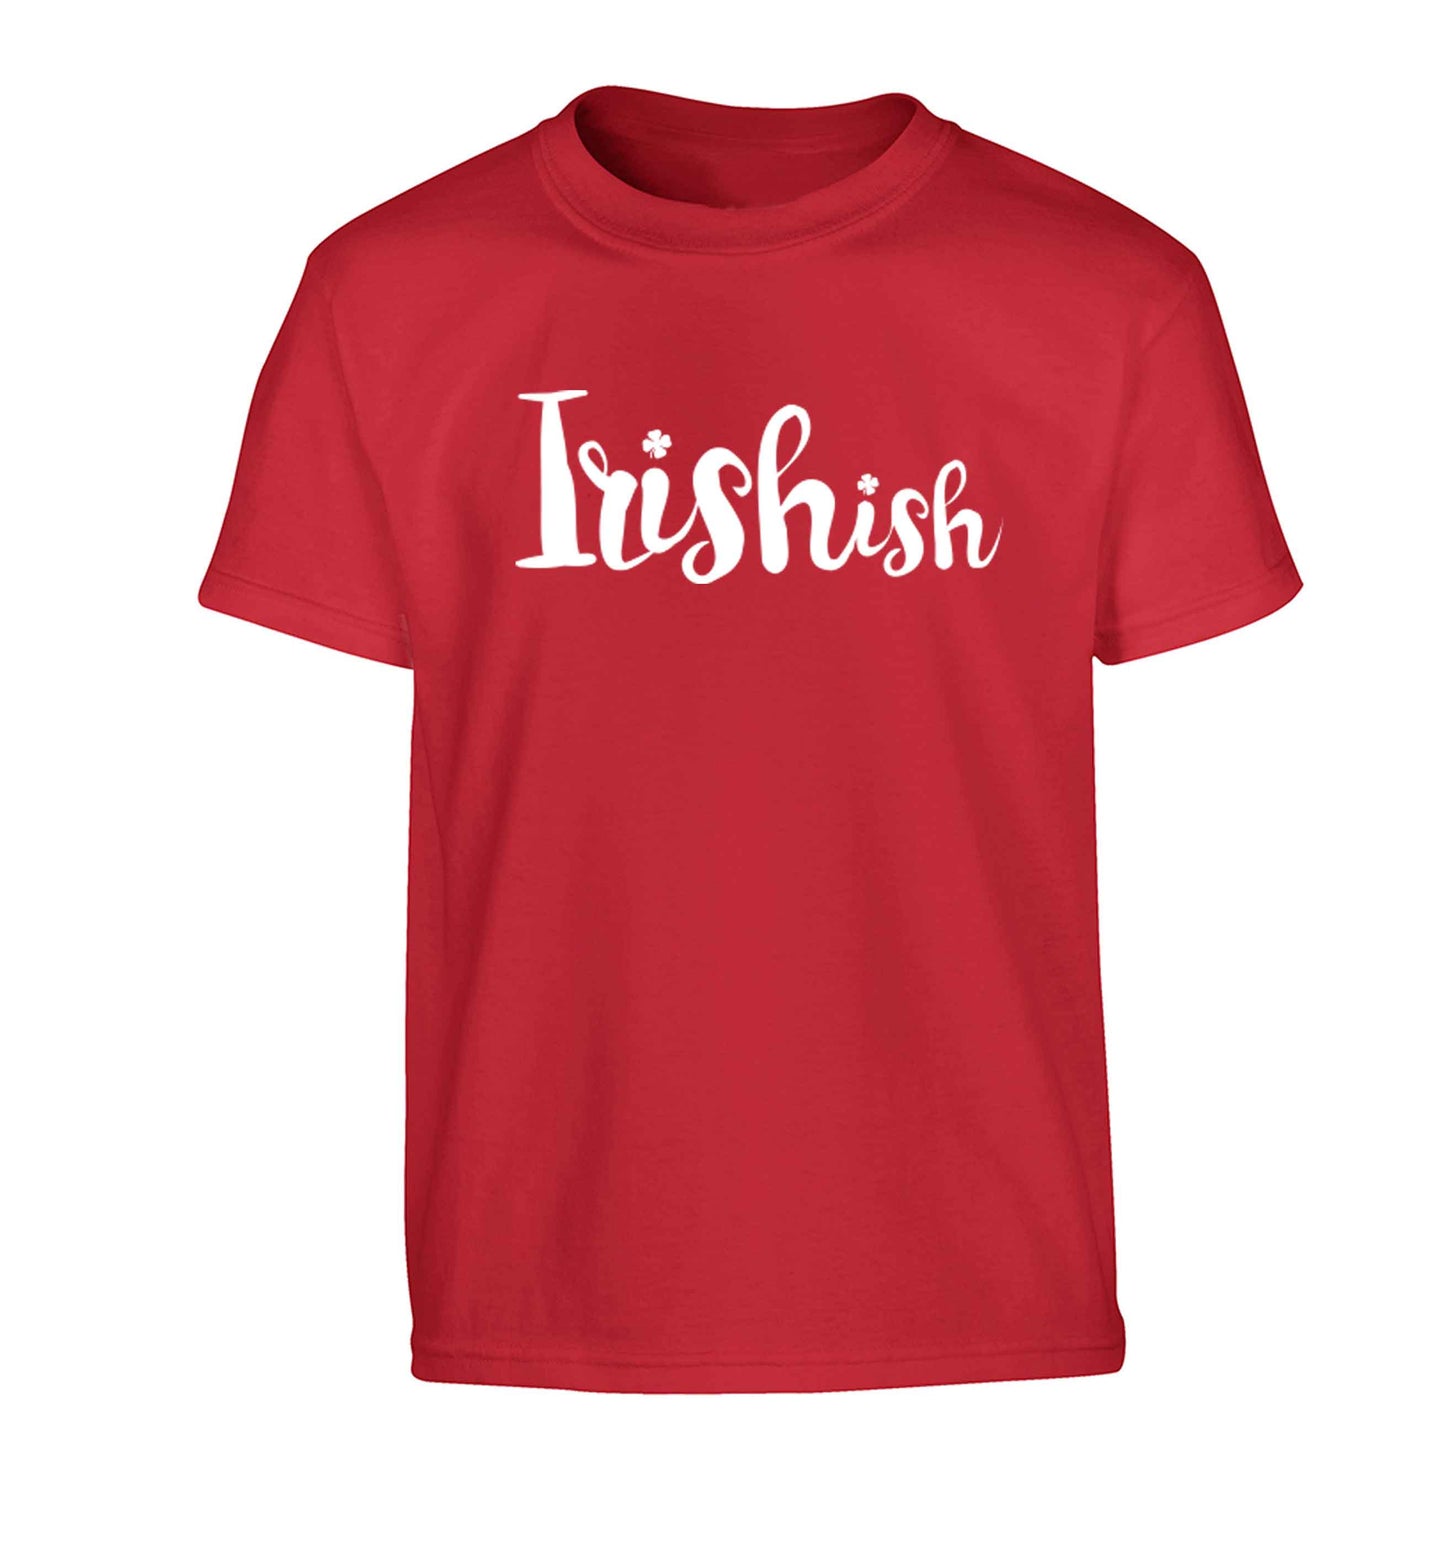 Irishish Children's red Tshirt 12-13 Years